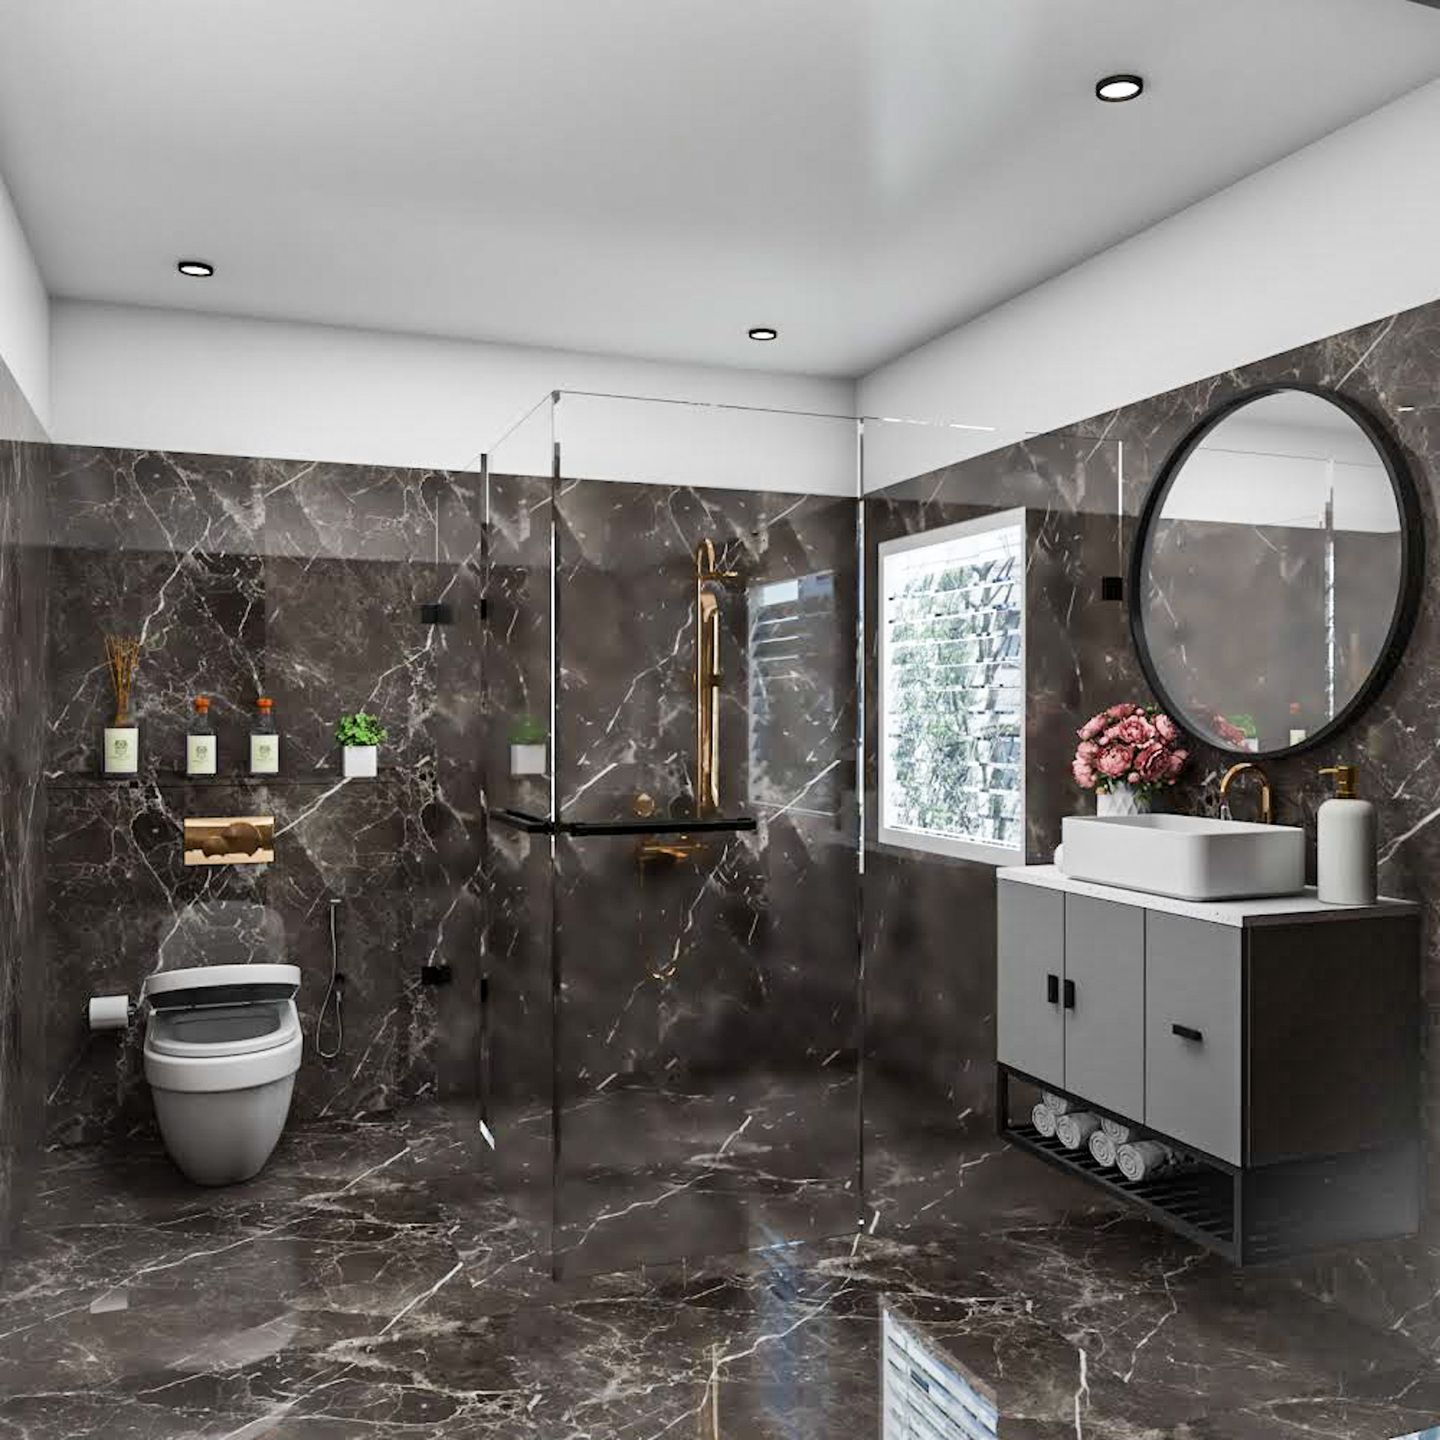 Bathroom Design With Shutter Storage - Livspace